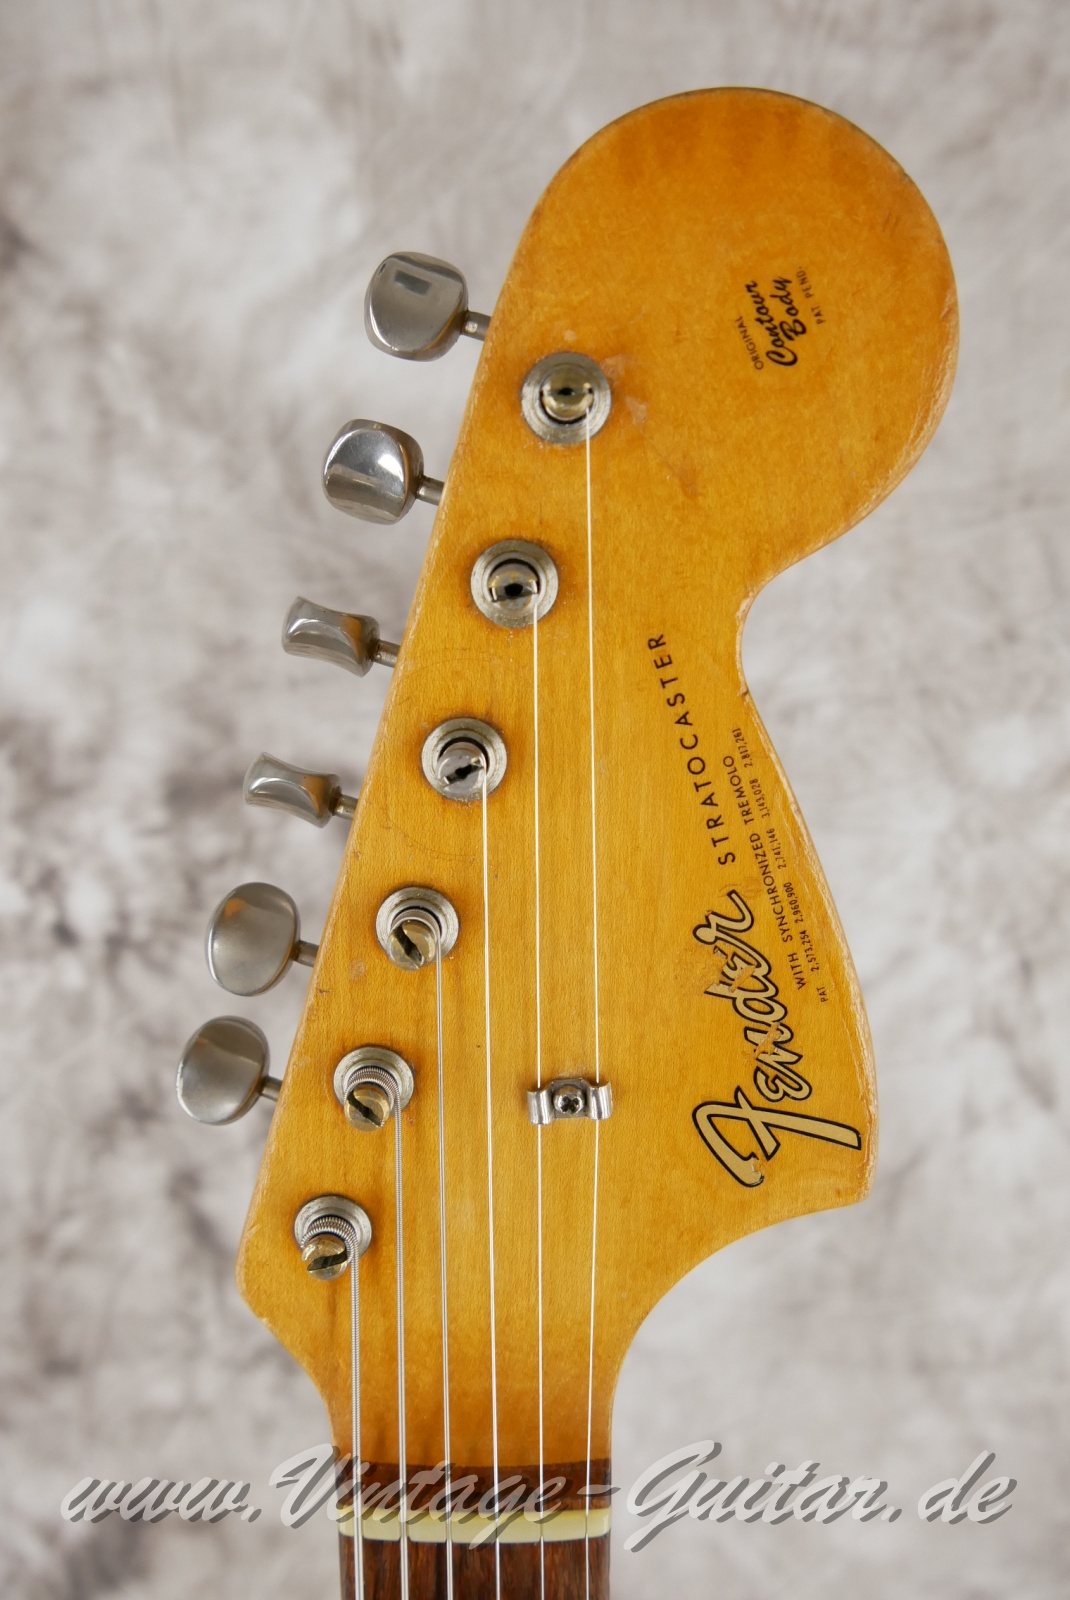 Fender_Stratocaster_body_stripped_1966-003.JPG